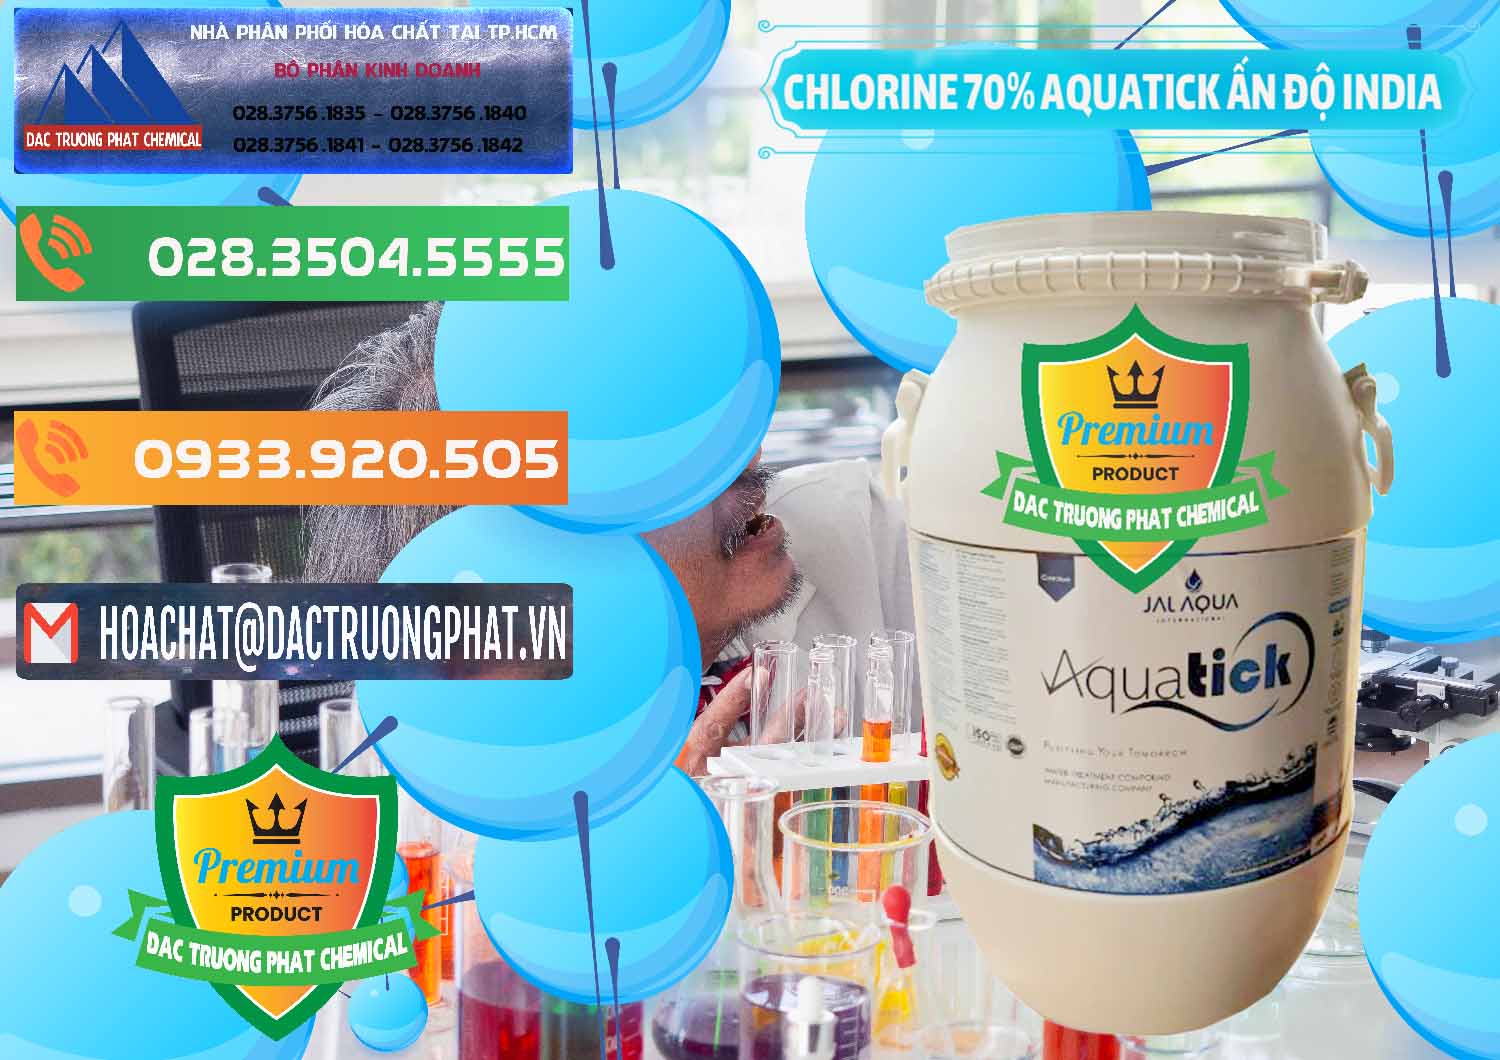 Nơi chuyên kinh doanh và bán Chlorine – Clorin 70% Aquatick Jal Aqua Ấn Độ India - 0215 - Cty chuyên phân phối và bán hóa chất tại TP.HCM - hoachatxulynuoc.com.vn